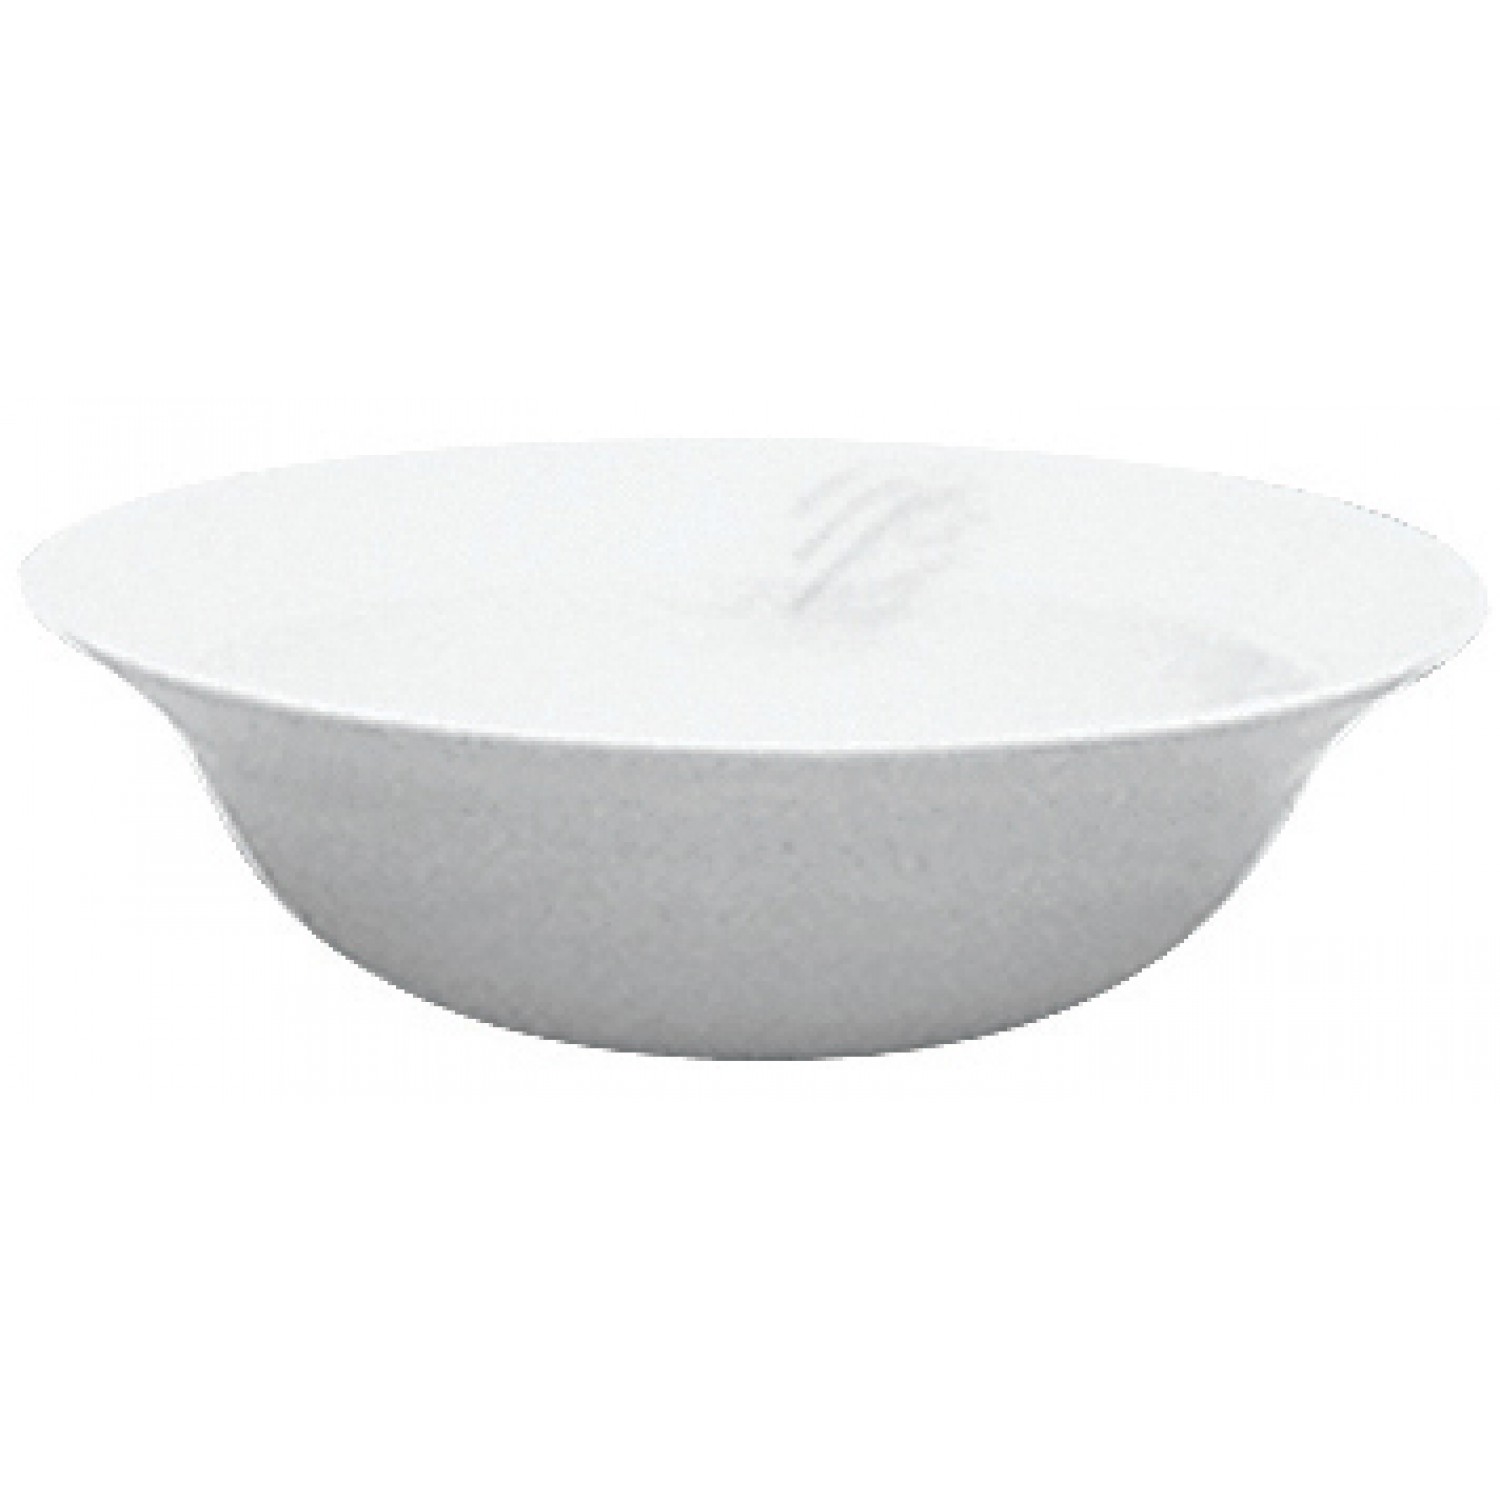 Μπολ | bowl Πορσελάνης Φ19cm Saturn Gural 52.44305